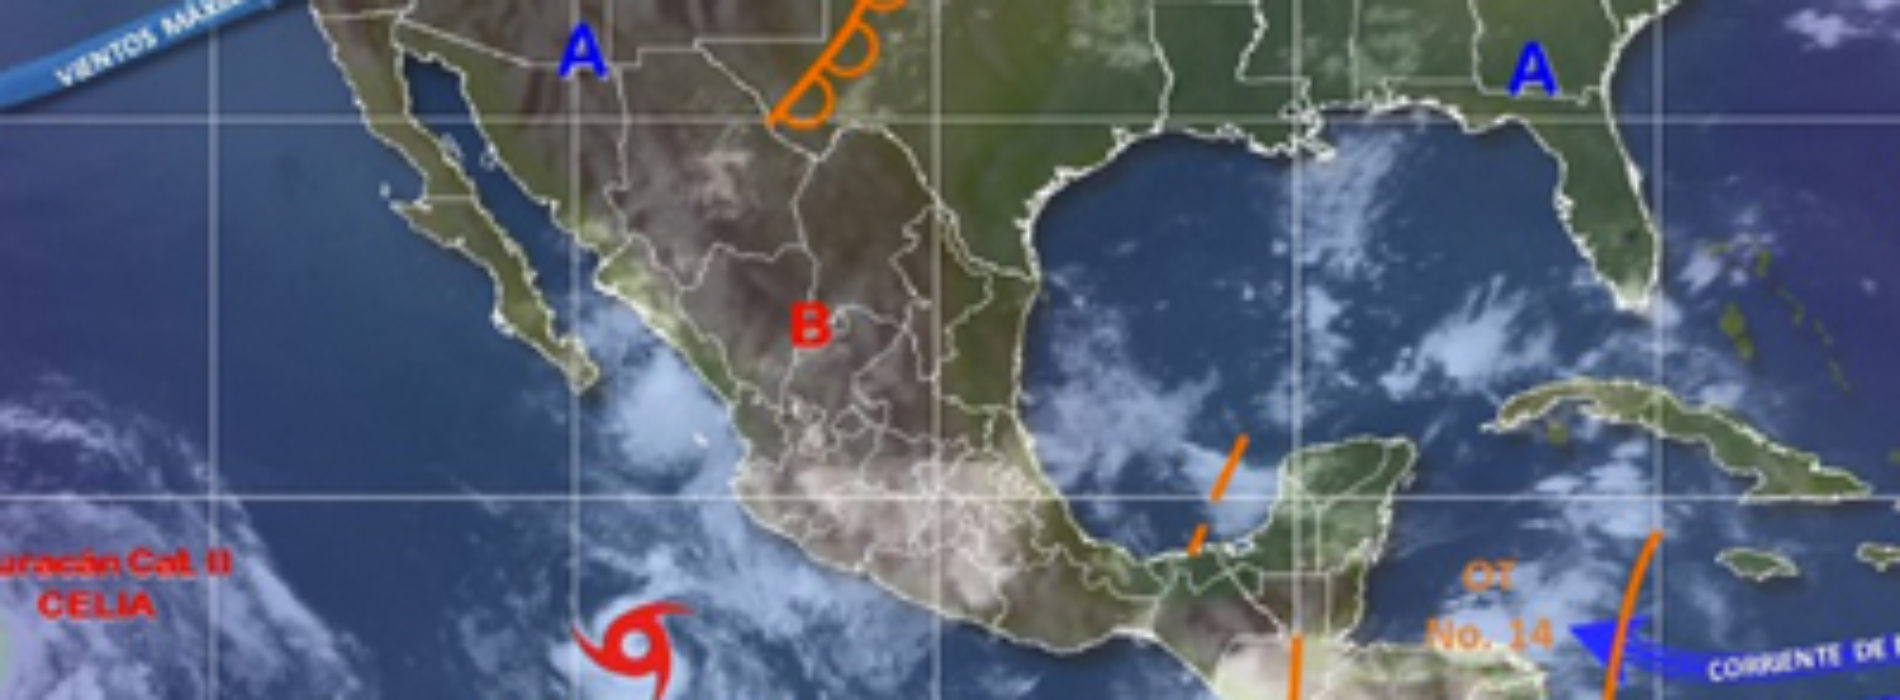 Intervalos de chubascos fuertes con tormentas intensas en Oaxaca